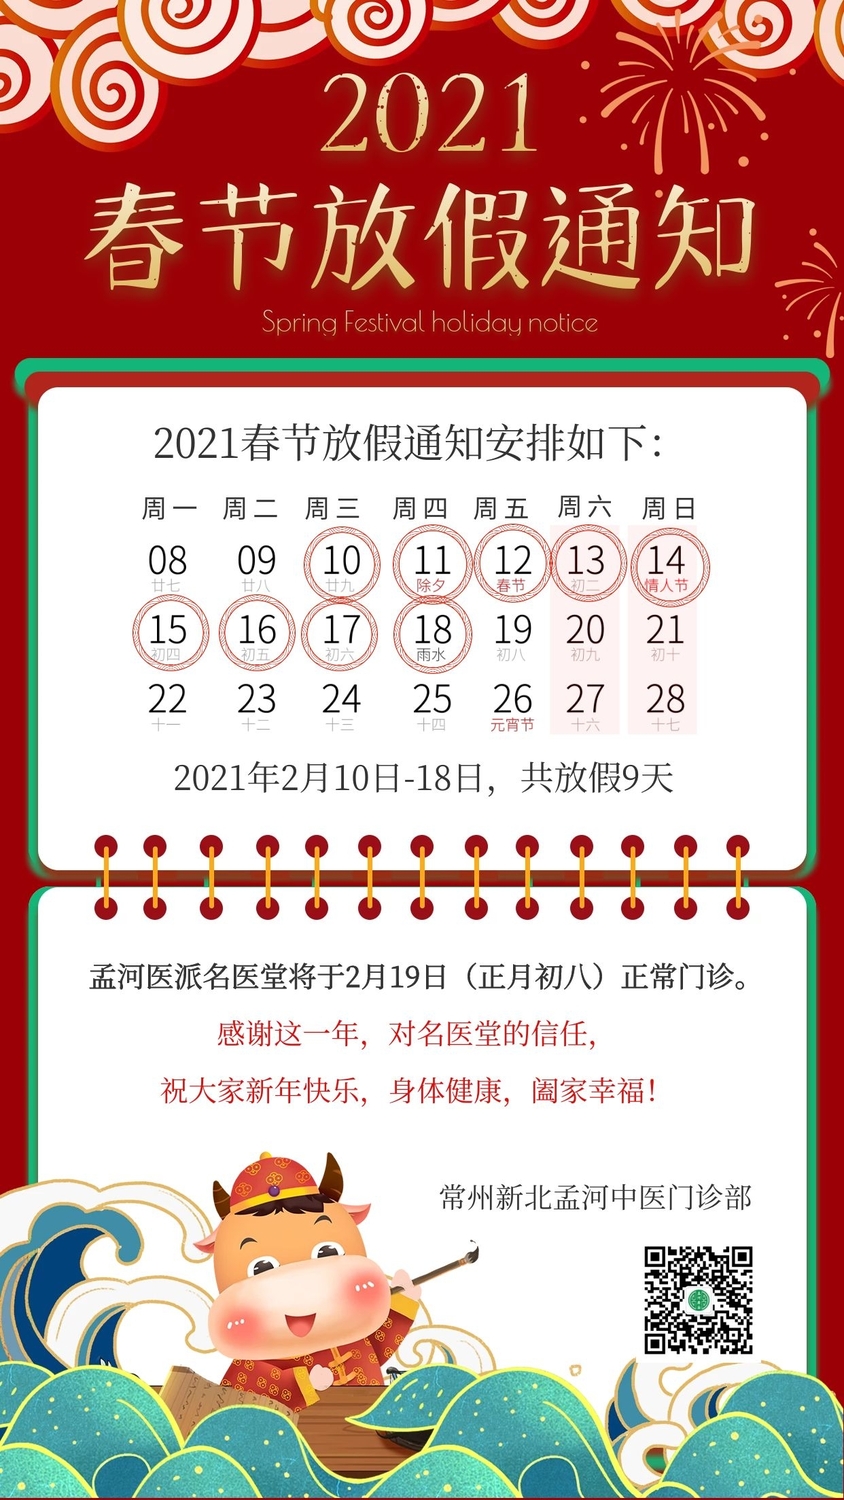 名医堂于2021年2月10日至2月18日放假9天,2月19日(正月初八)正式上班